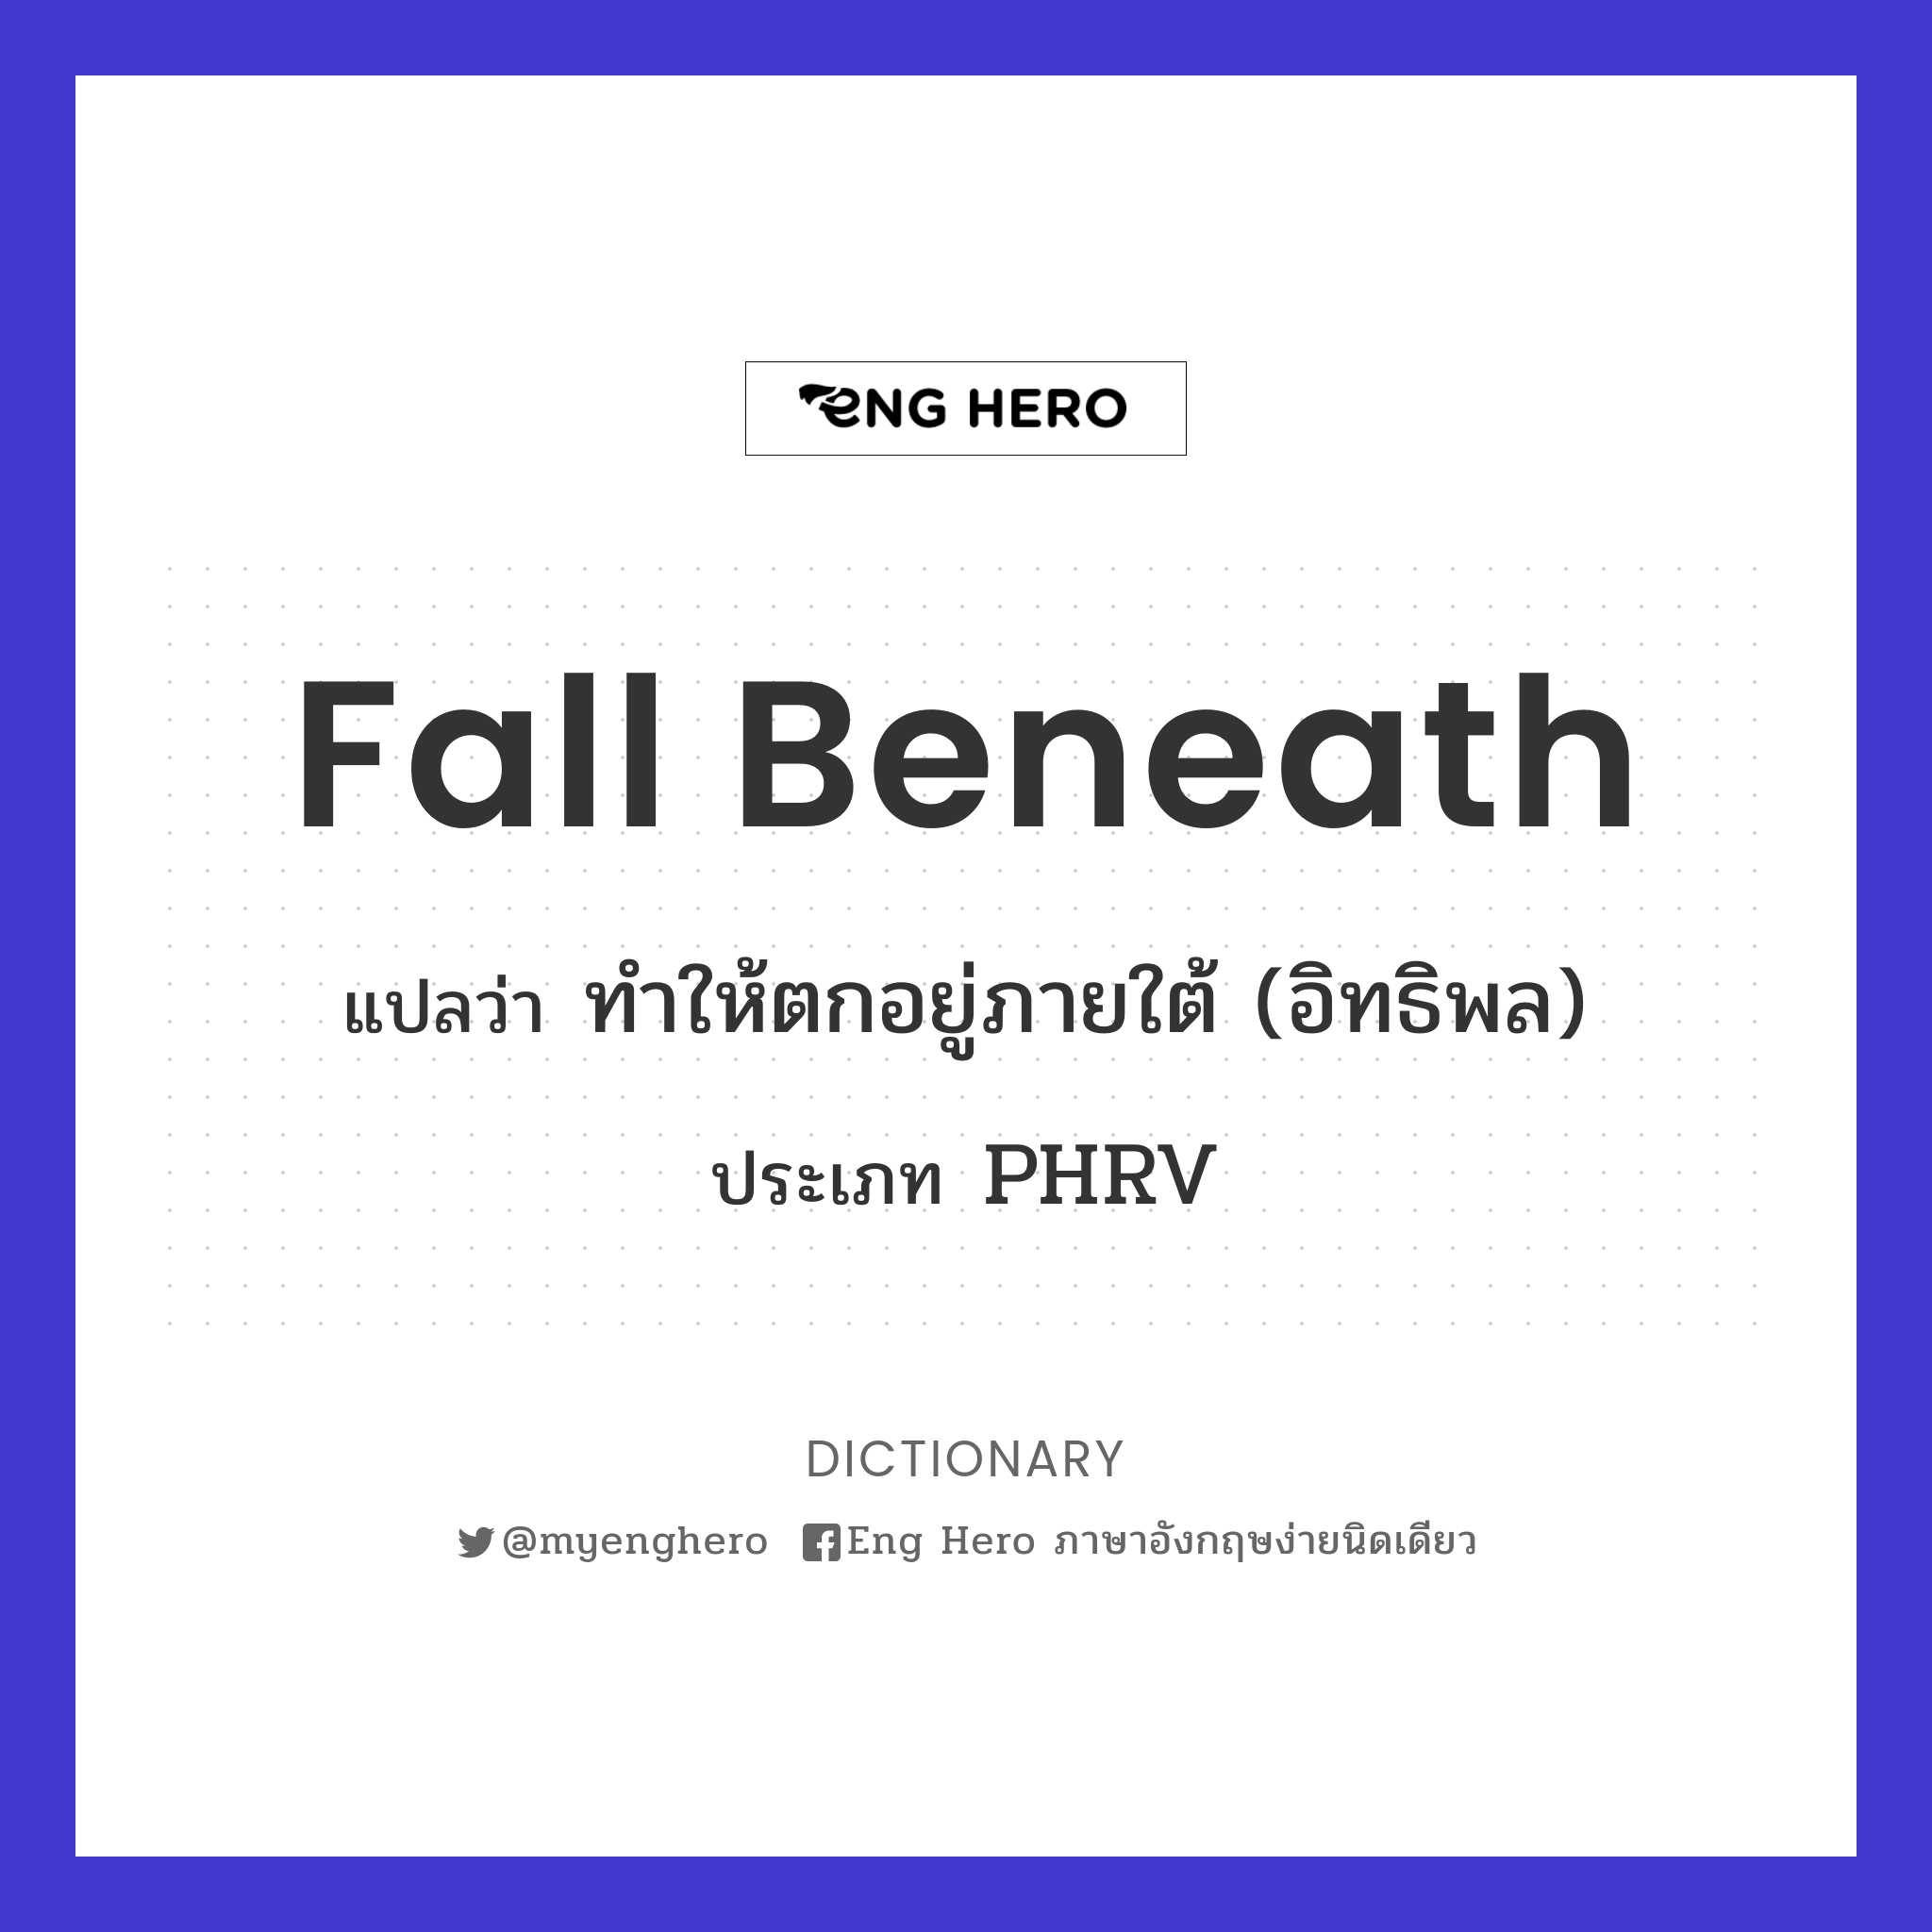 fall beneath